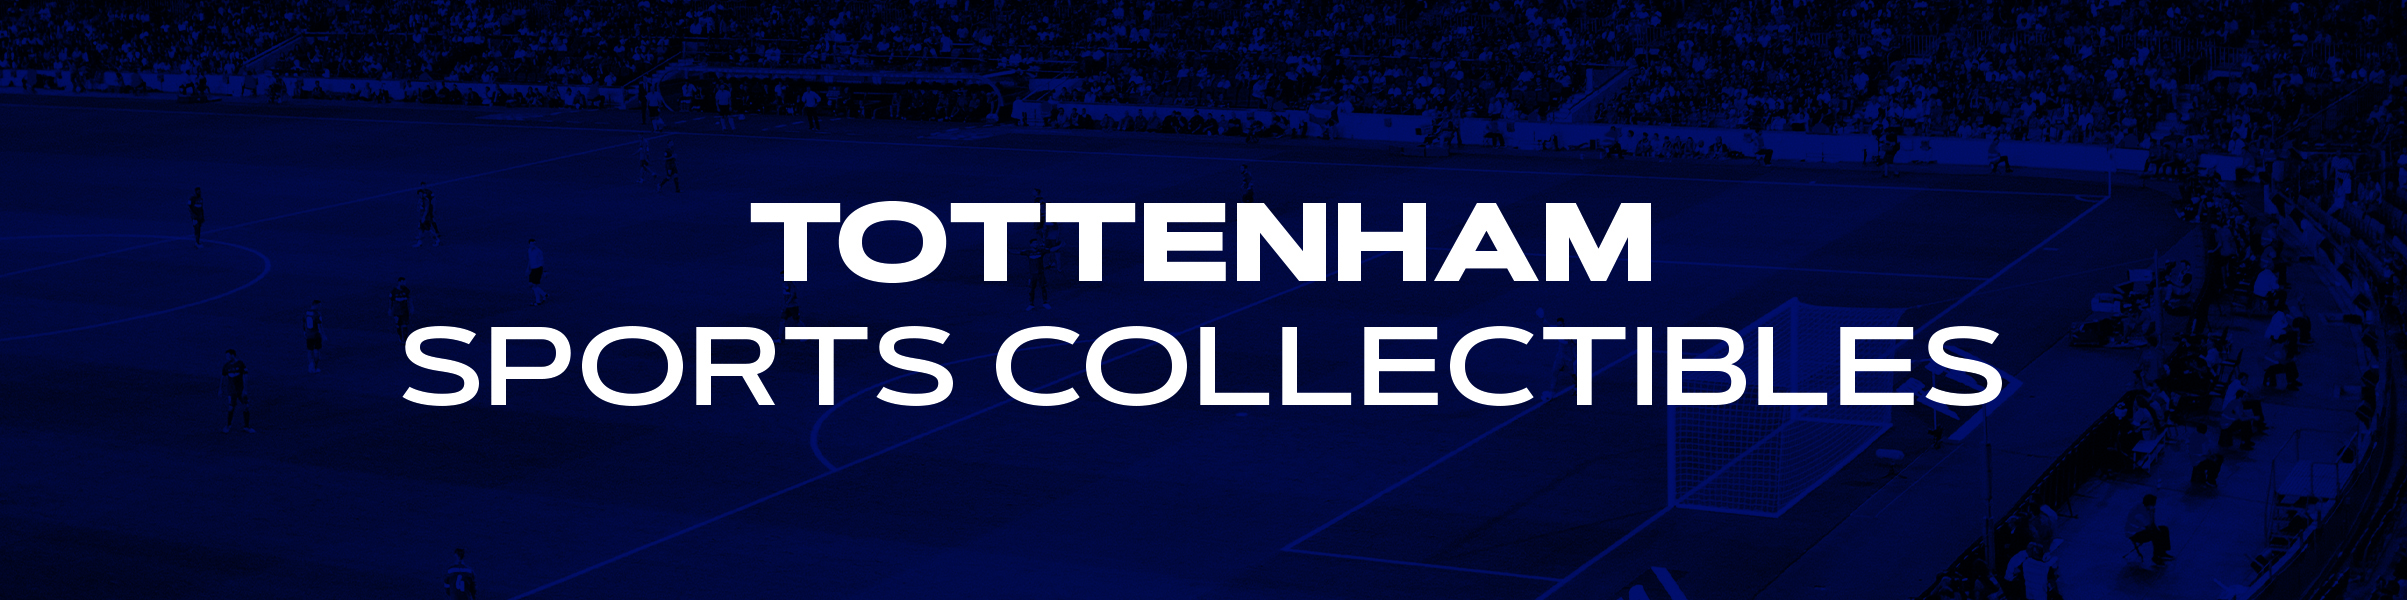 Tottenham Hotspur Sports Collectibles